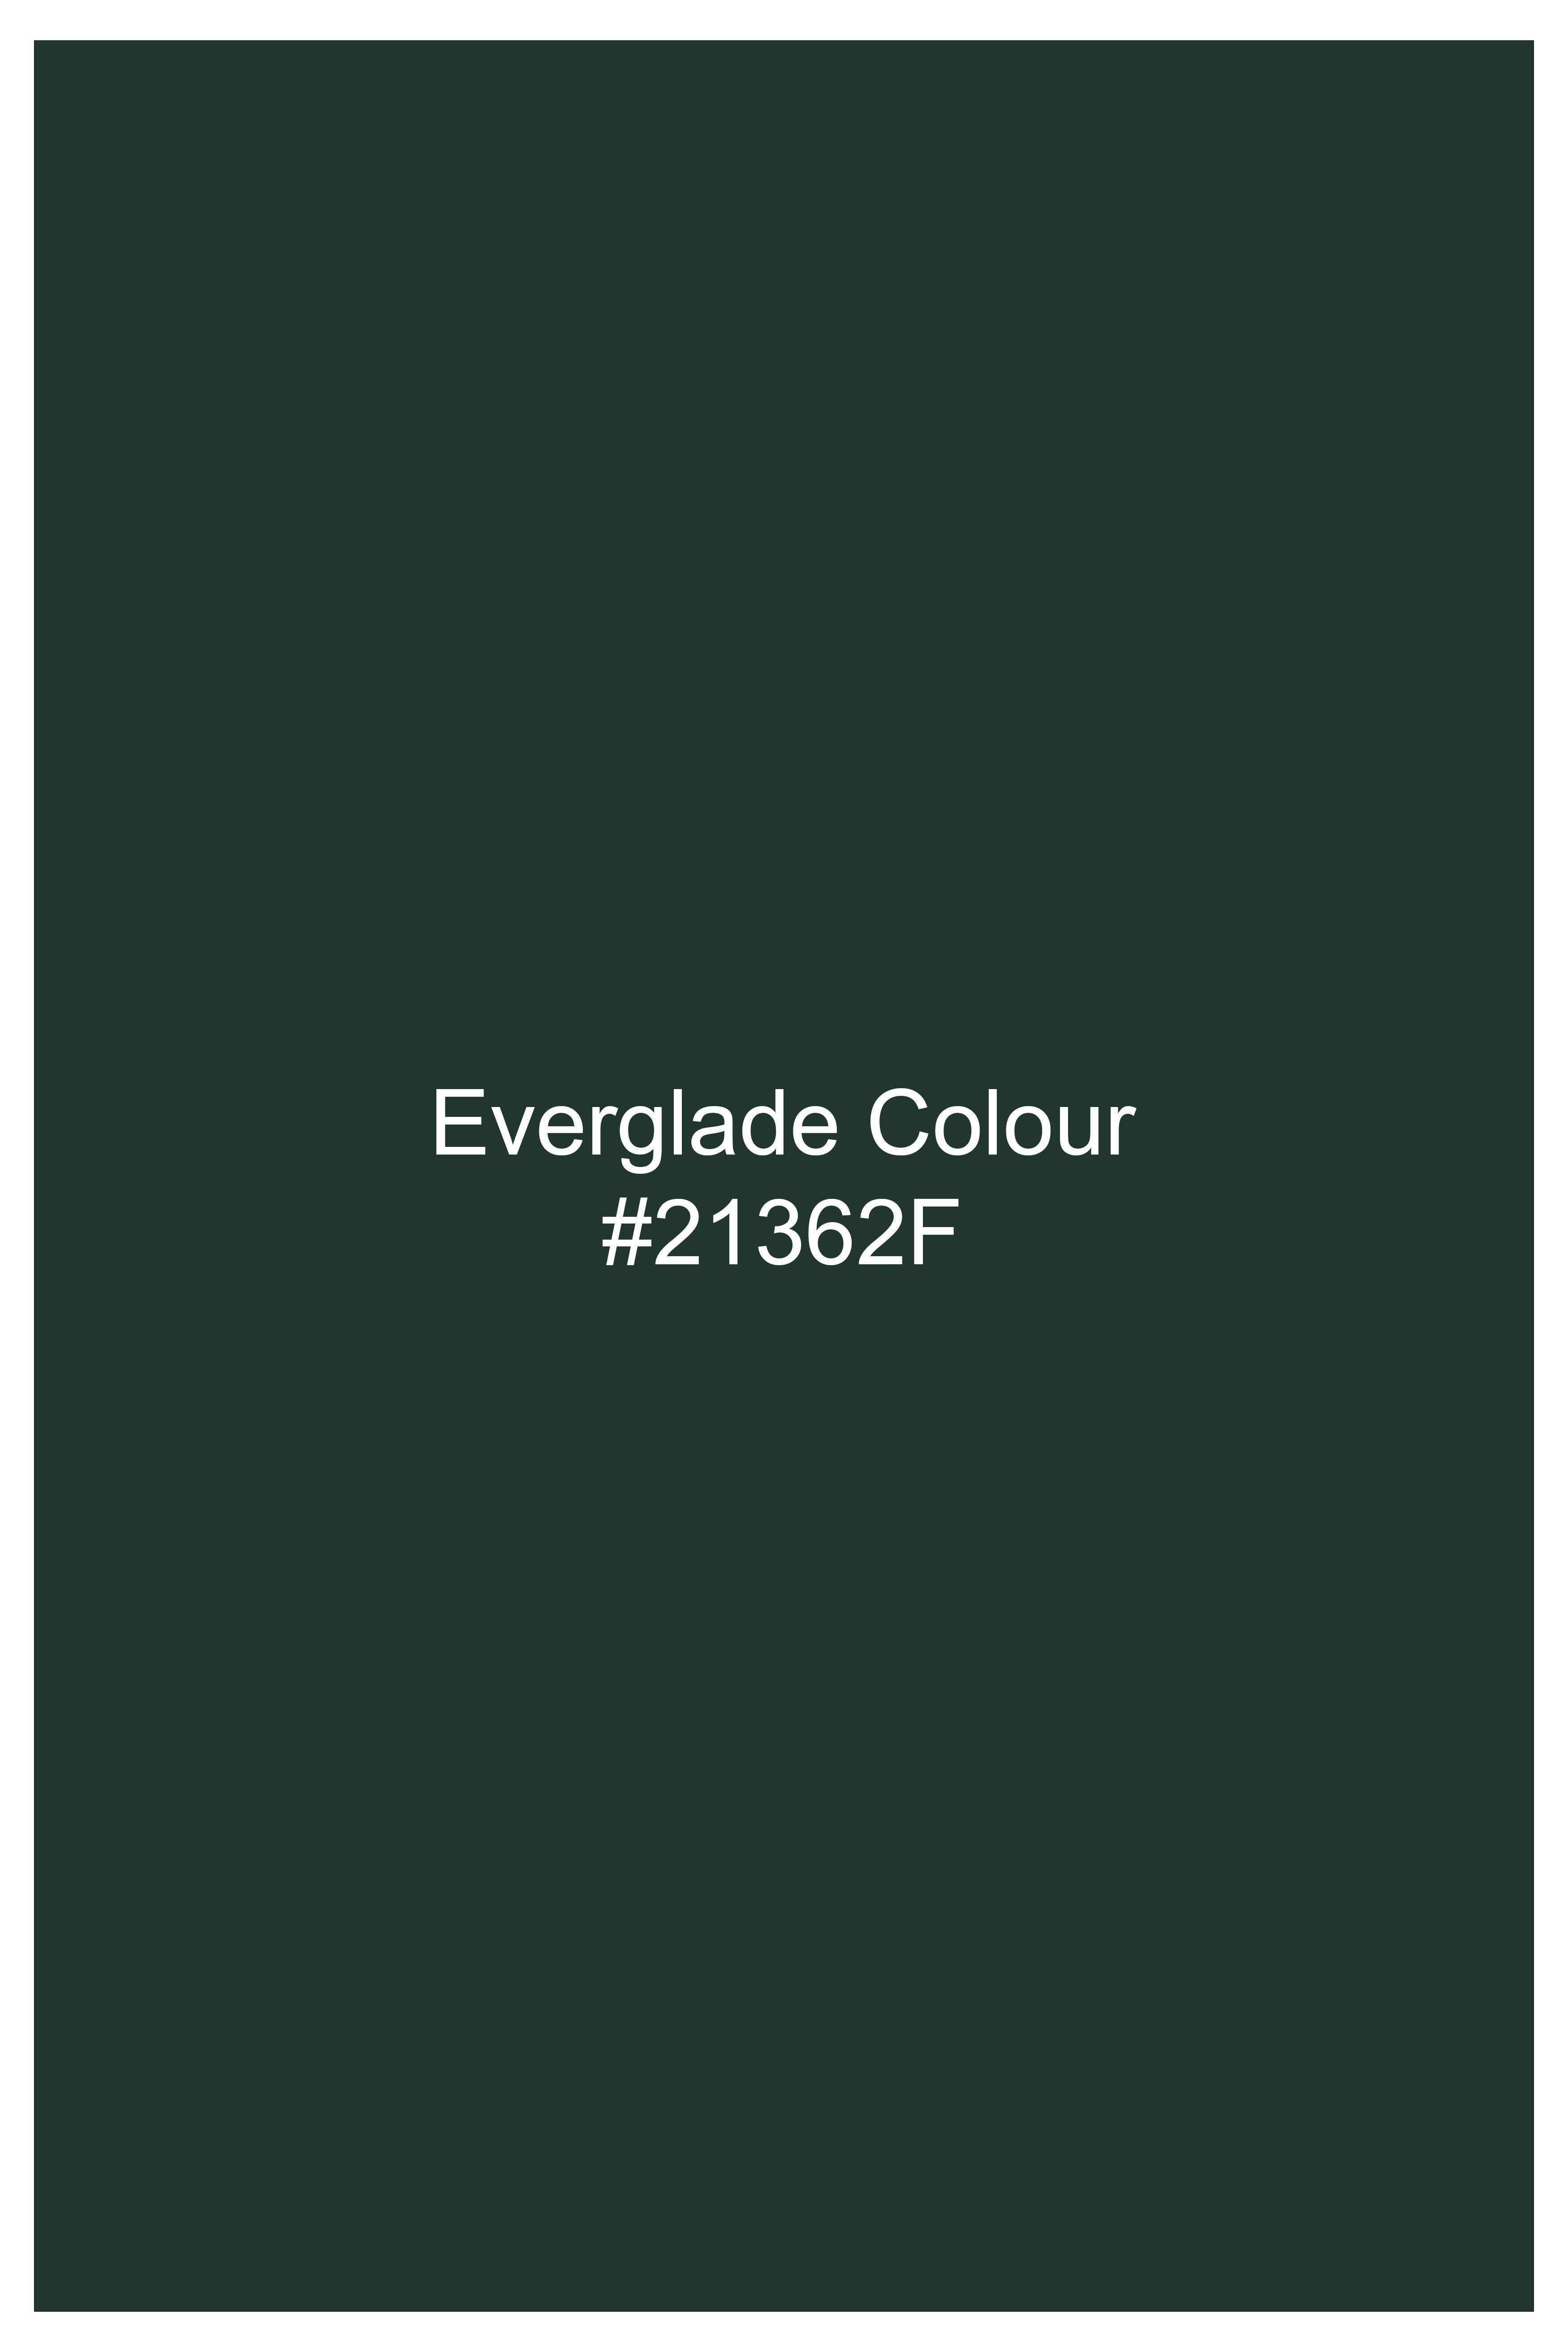 Everglade Green Plain Solid Wool Blend Blazer